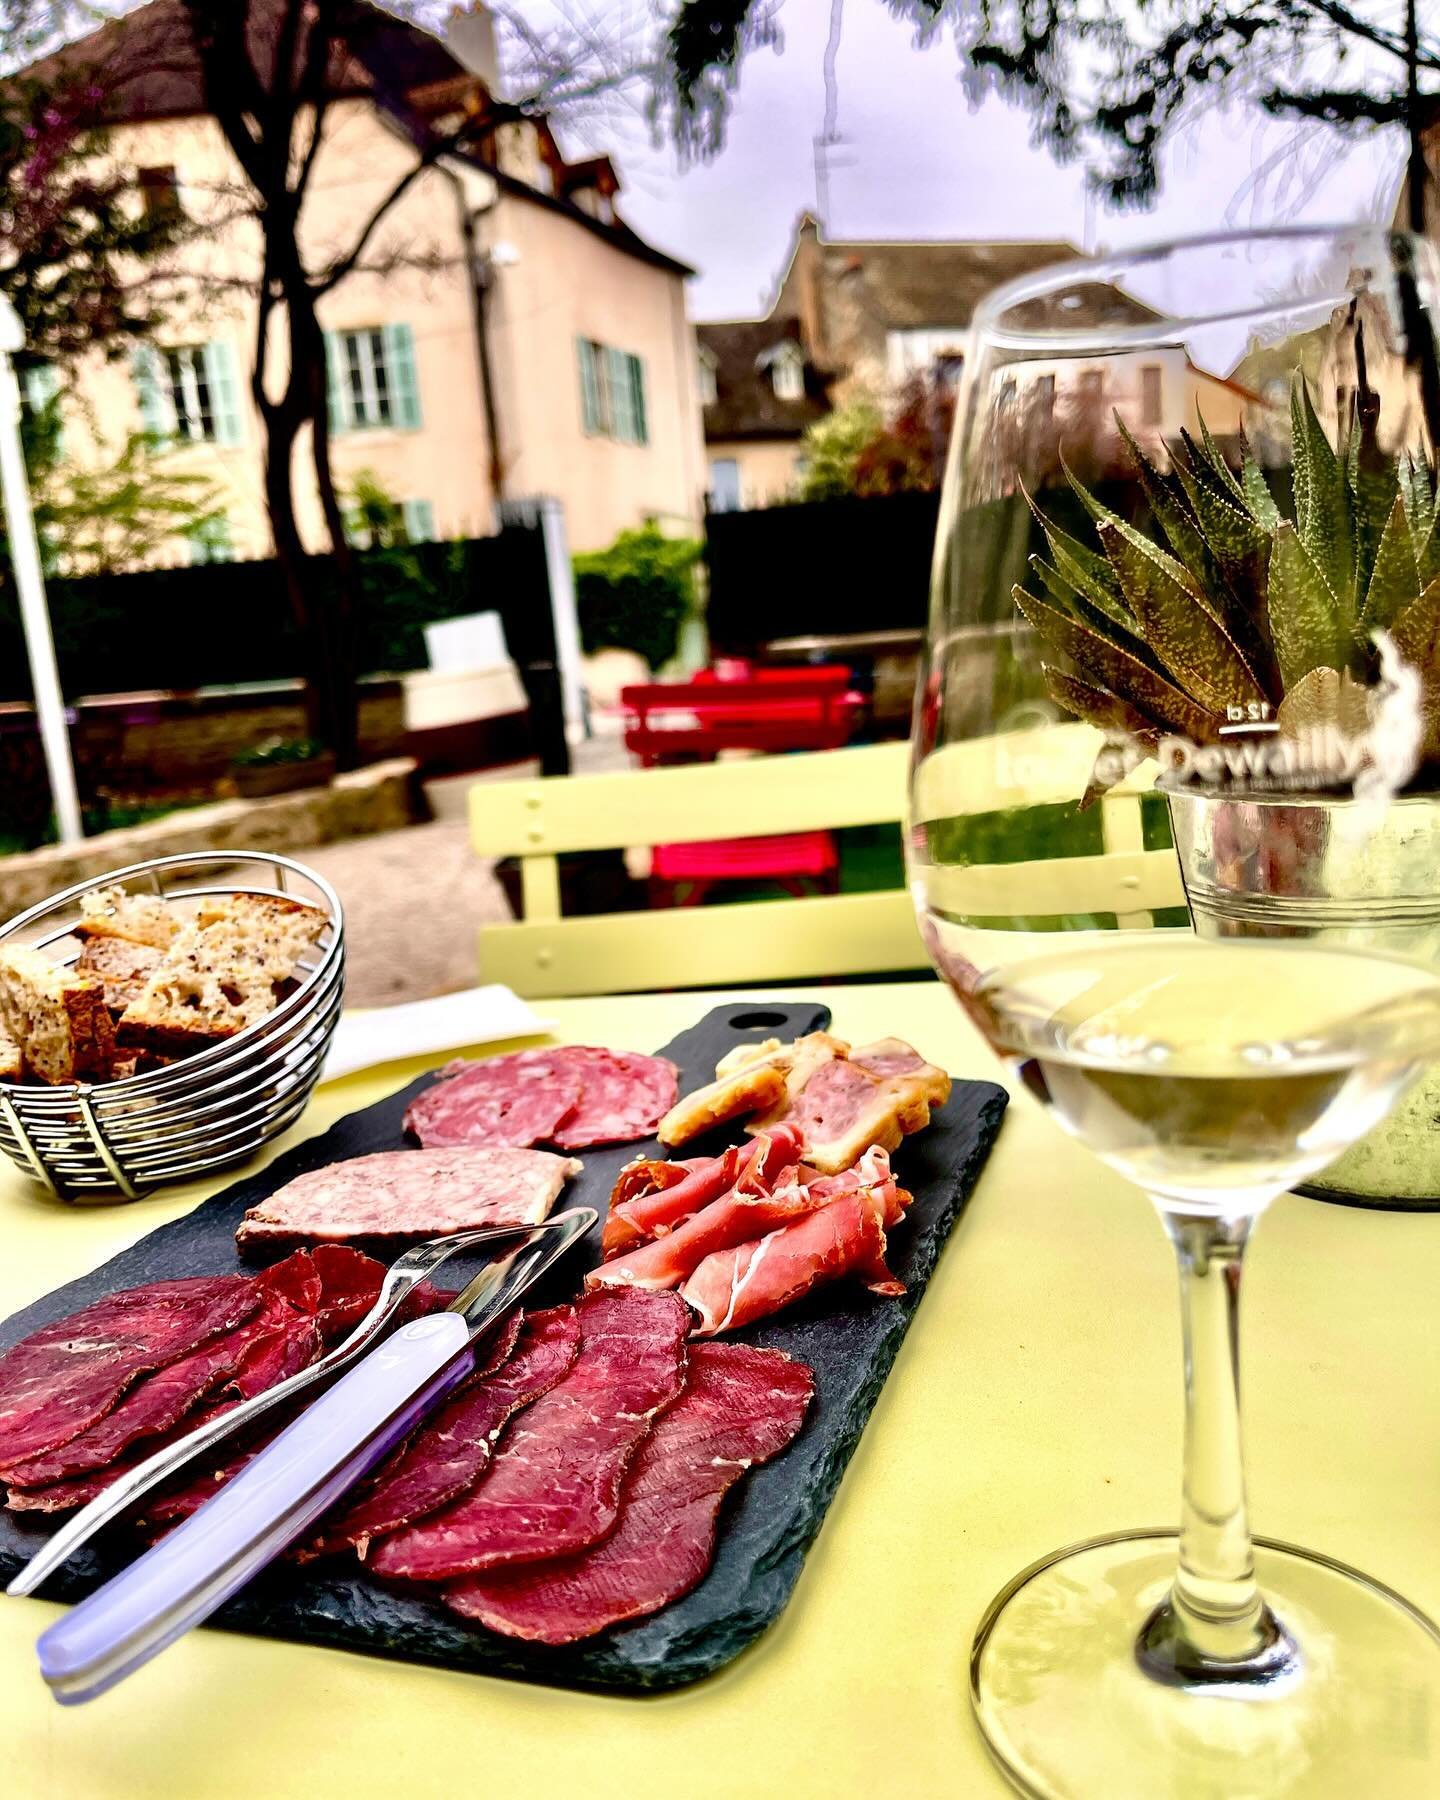 🇫🇷ワインの聖地🍷How does one get ready for a #Wine Competition?!😁 Tasting the incredible local wine😉
⠀⠀⠀⠀⠀⠀⠀⠀⠀
Arrived in delicious Burgundy🇫🇷 after a 1,200 km journey🚗 from Madrid 🇪🇸 Getting ready for tomorrow!
⠀⠀⠀⠀⠀⠀⠀⠀⠀
And Here&rsquo;s a scenic